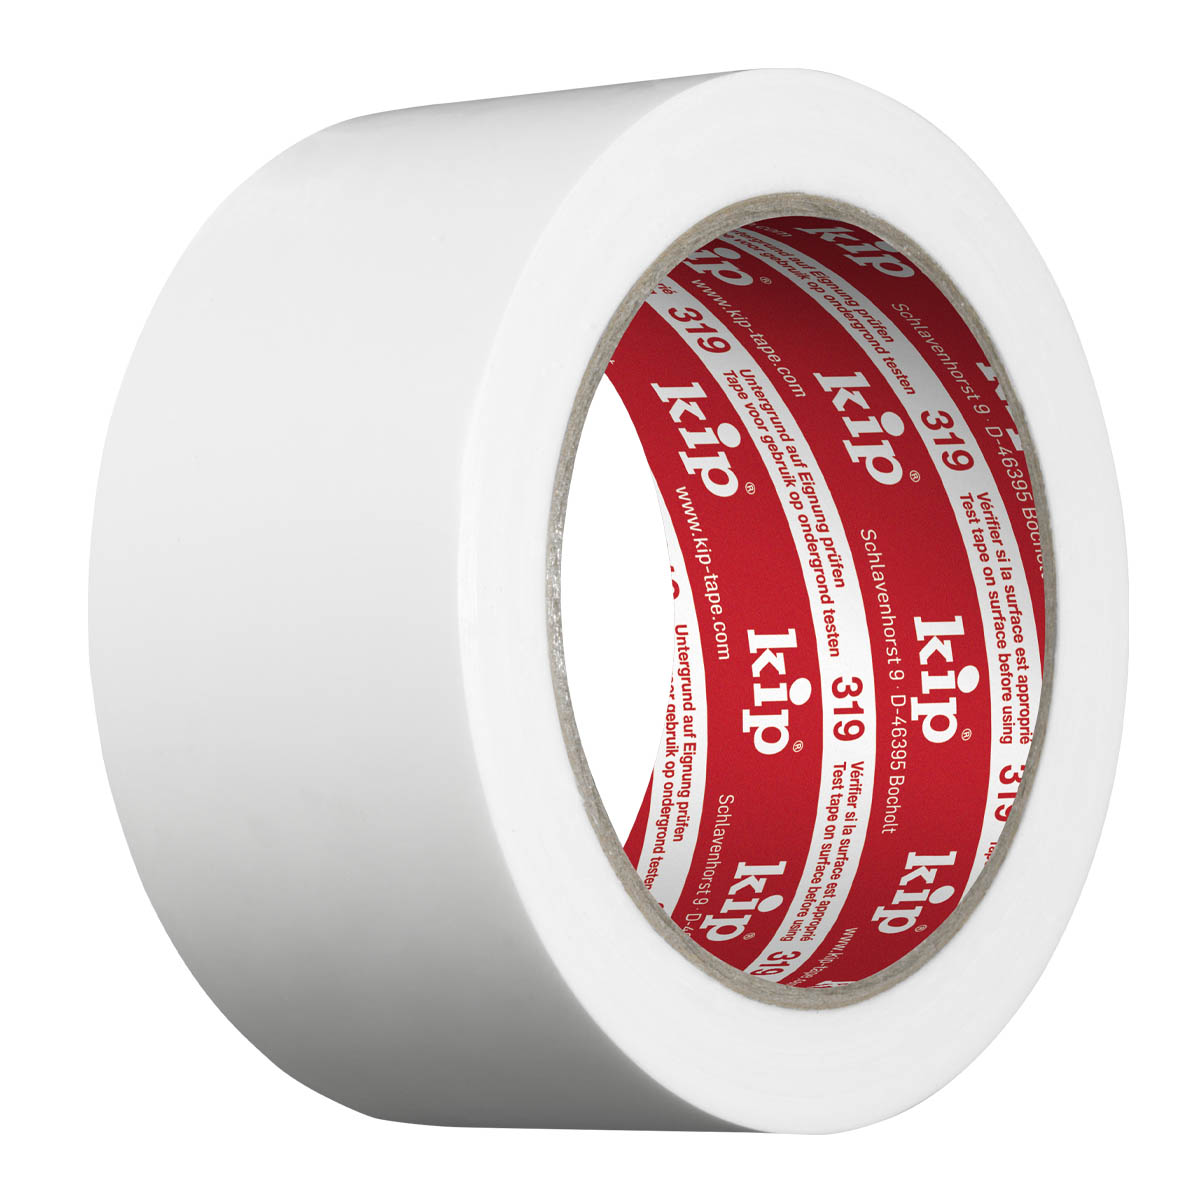 PE-Schutzband, weiß, 50 mm breit, 33 lfdm.